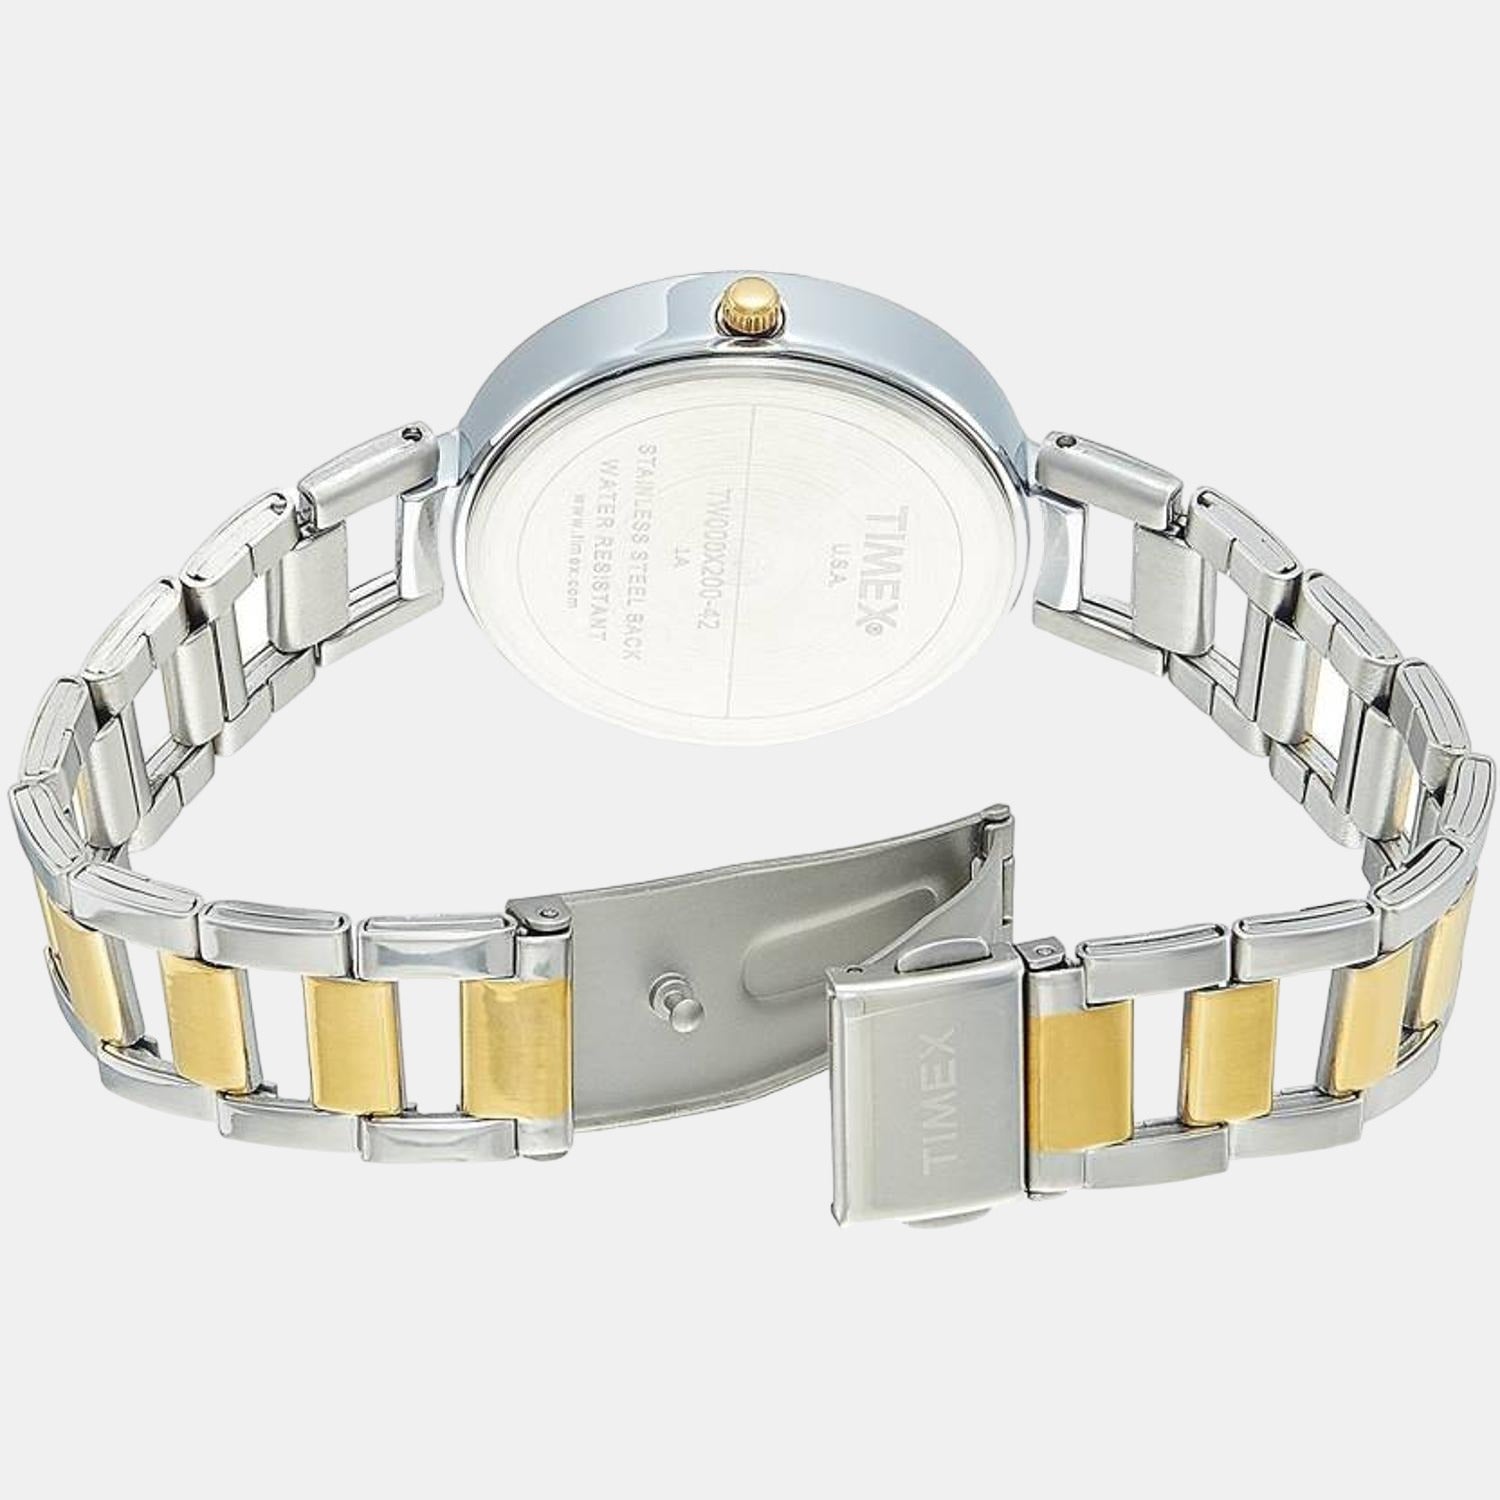 timex-brass-silver-analog-female-watch-tw000x200